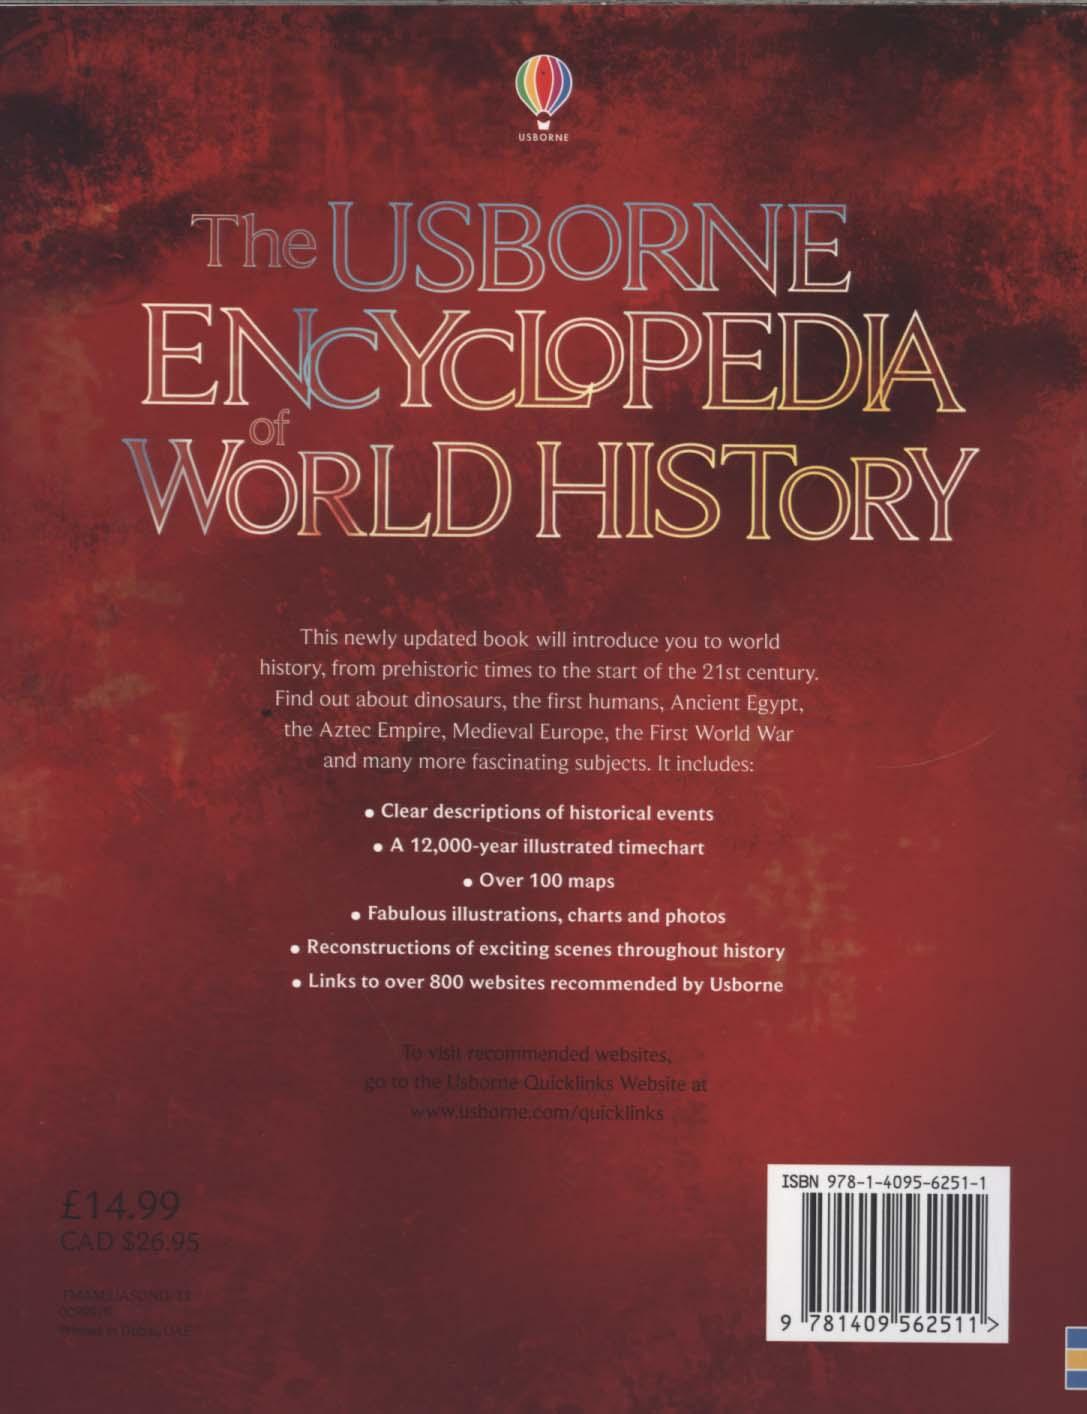 Encyclopedia of World History